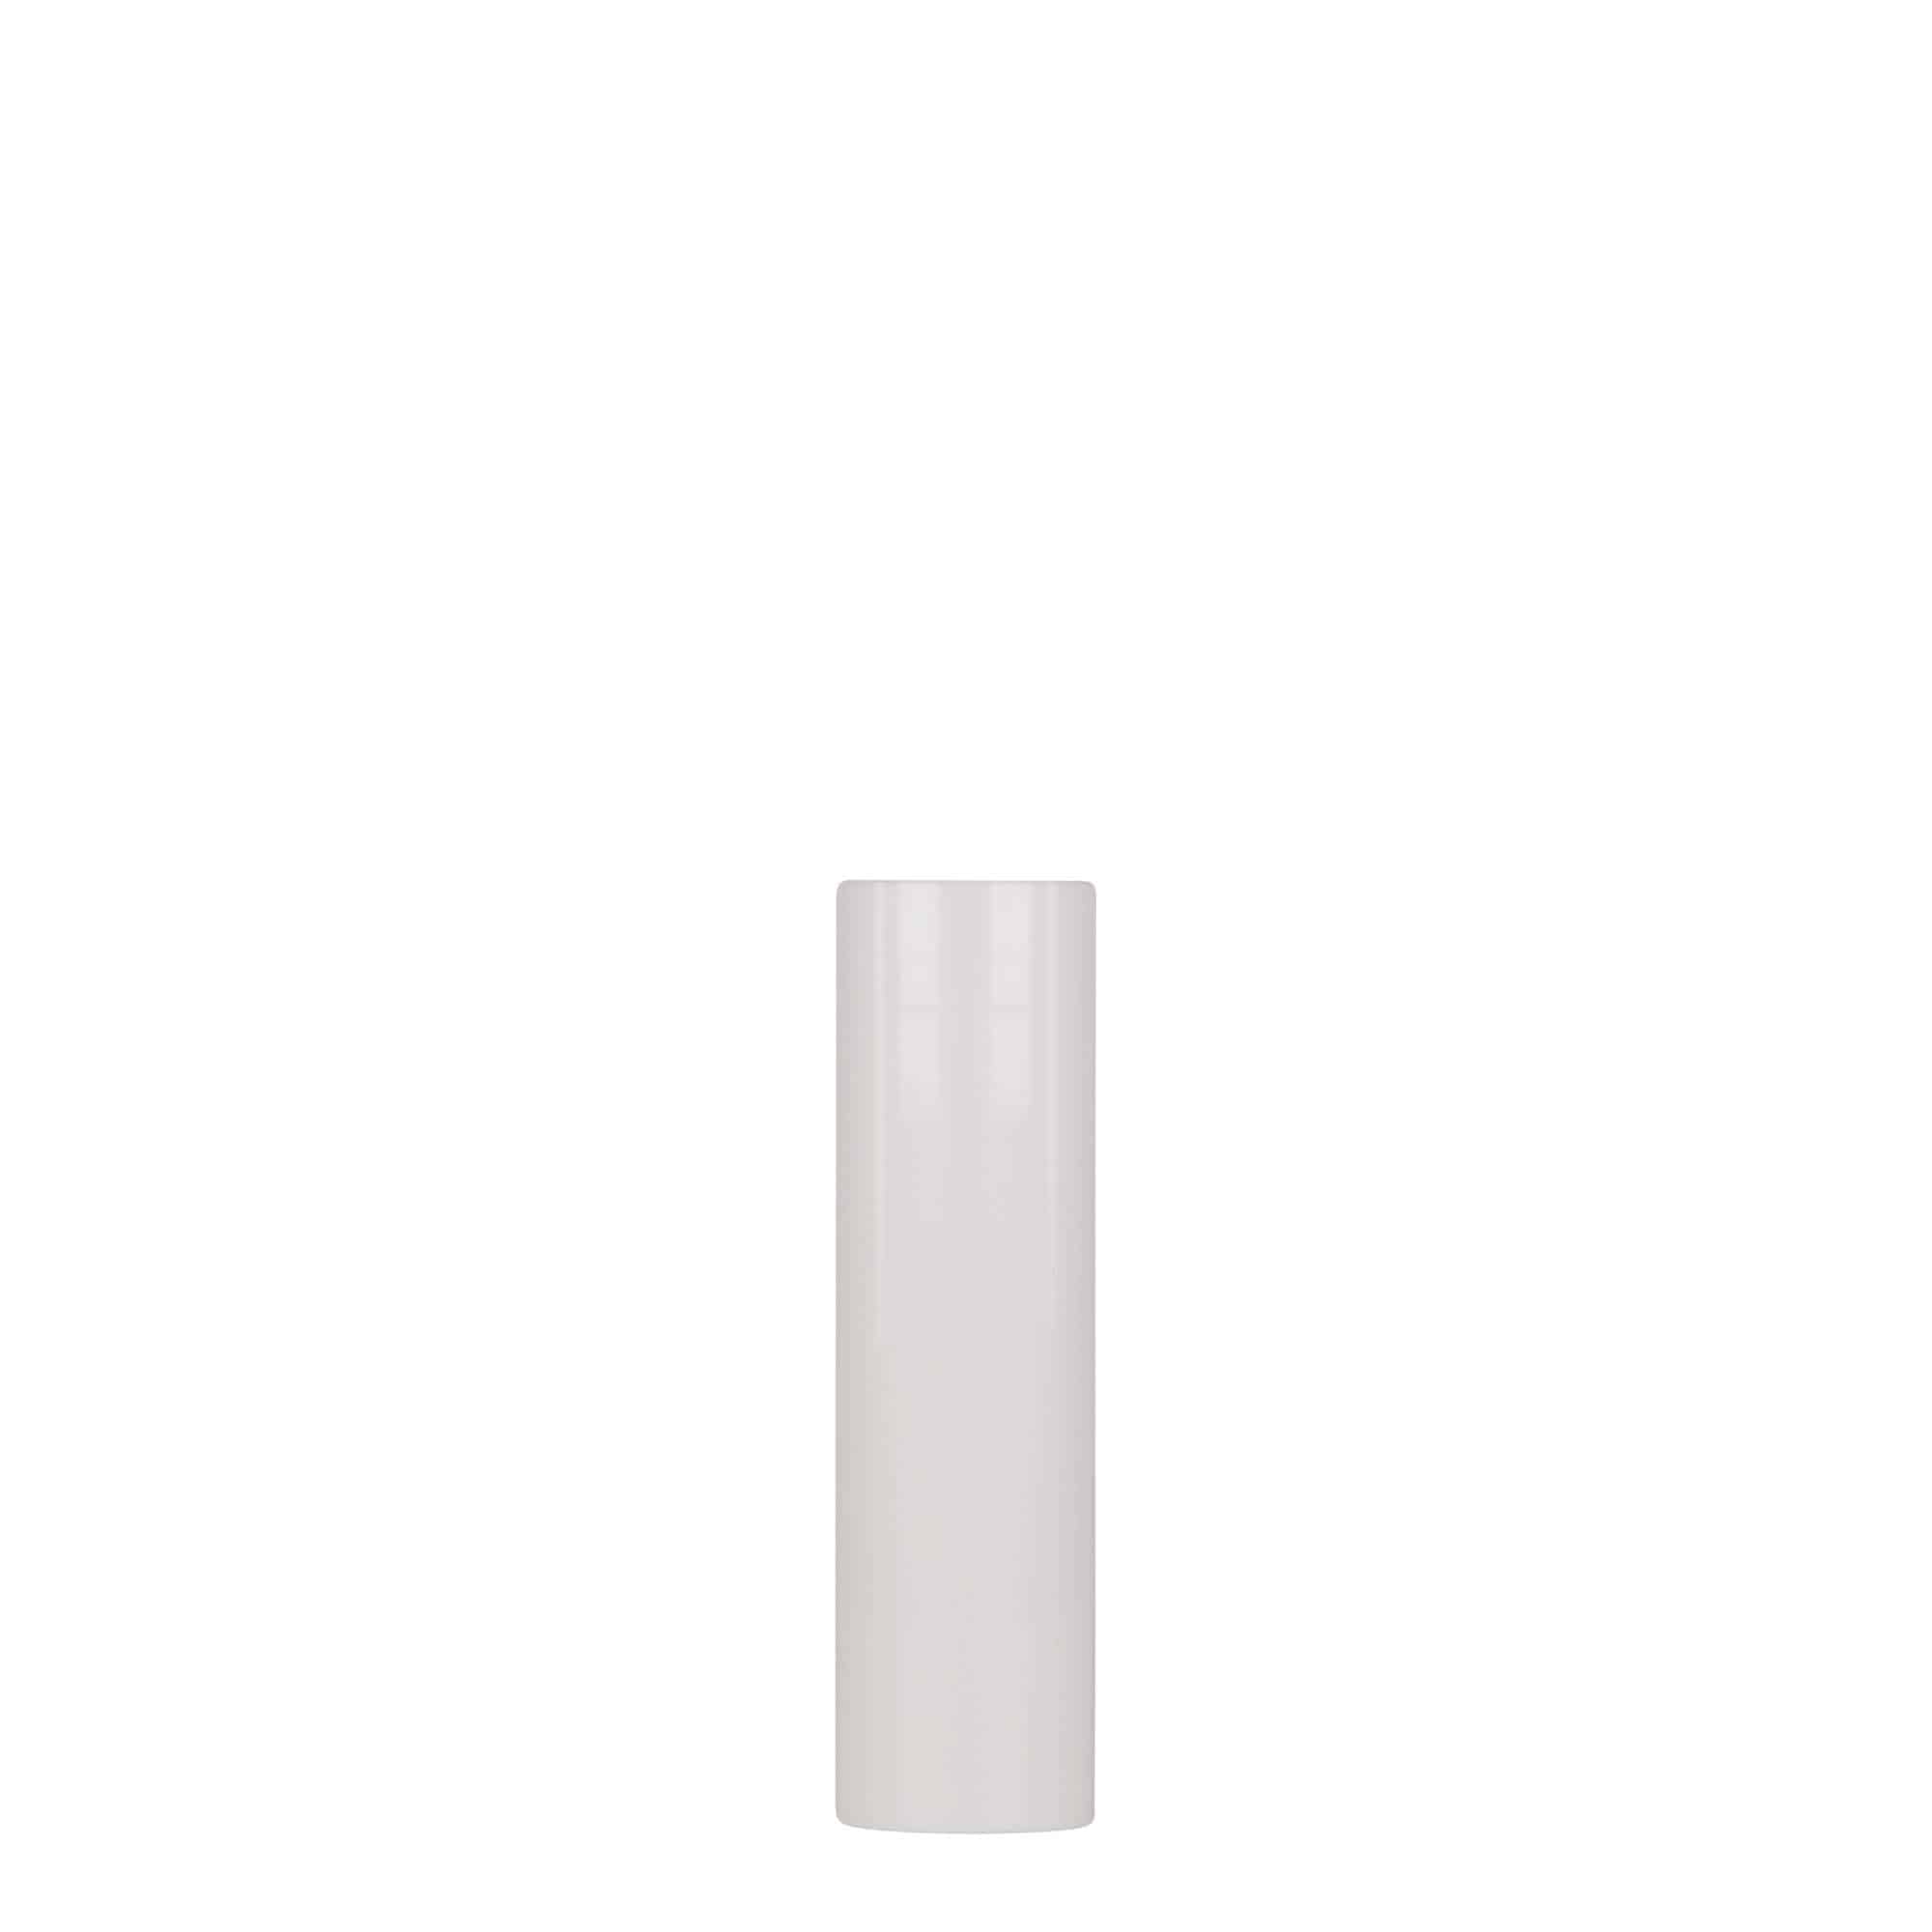 15 ml airless dispenser 'Nano', PP plastic, white